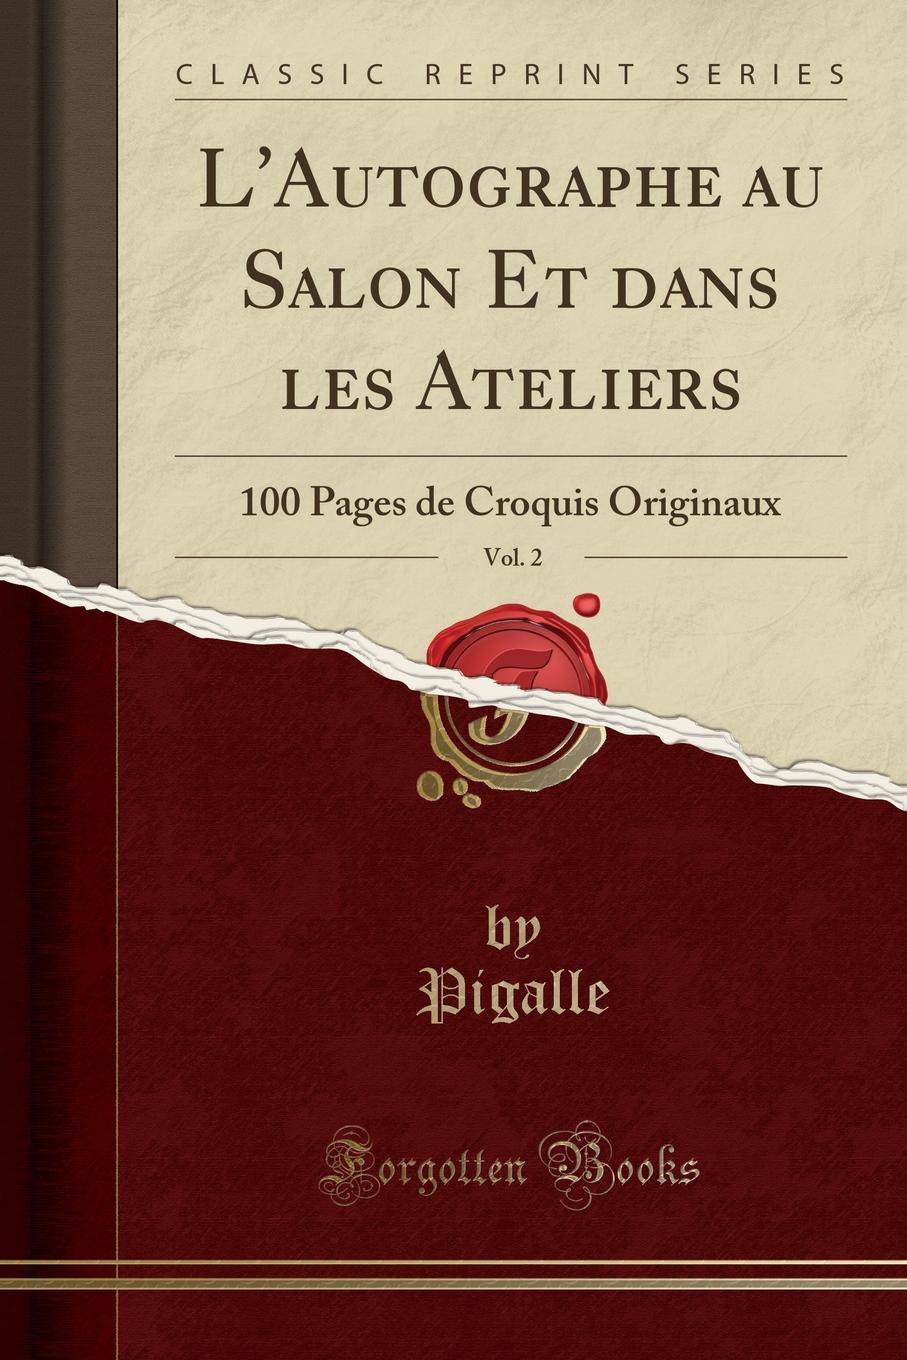 Pigalle Pigalle L.Autographe au Salon Et dans les Ateliers, Vol. 2. 100 Pages de Croquis Originaux (Classic Reprint)